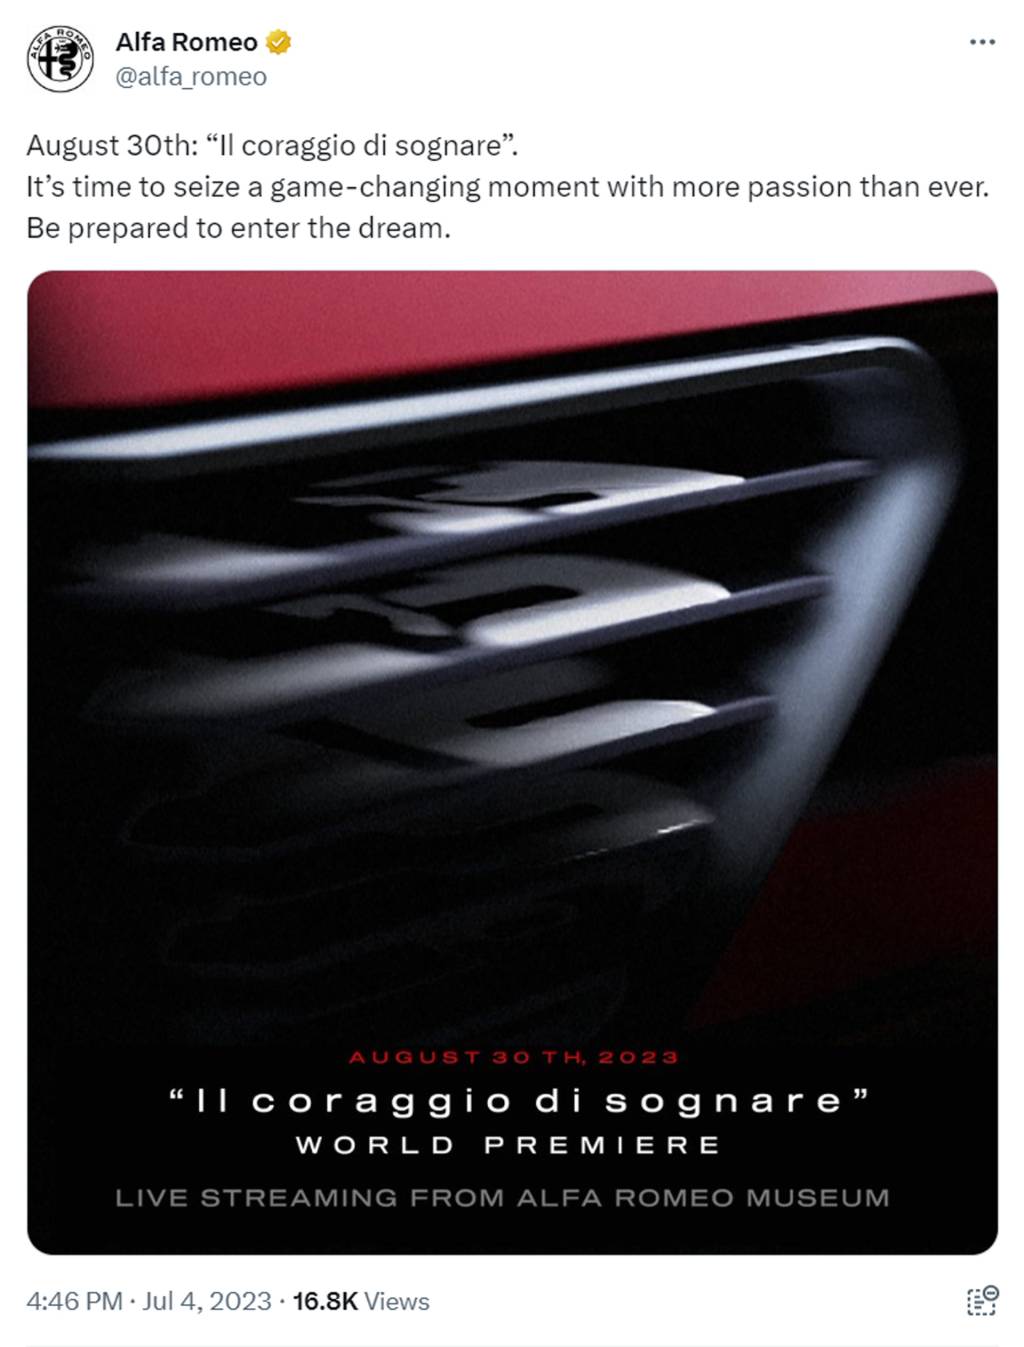 Twitter-inlägg från Alfa Romeo den 4 juli 2023